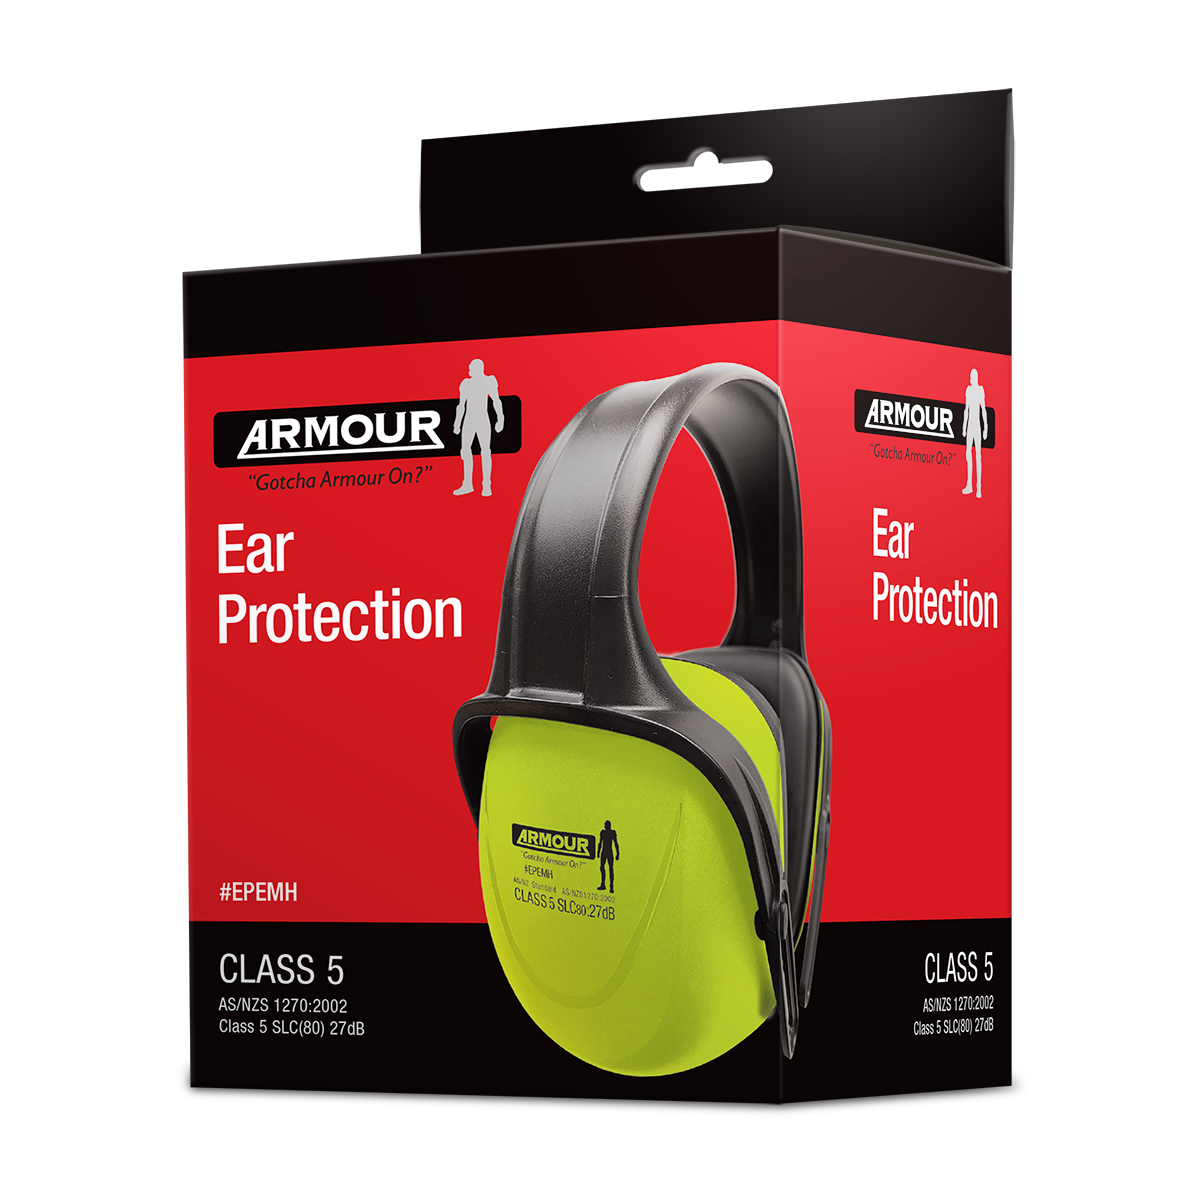 Armour Safety Products Ltd. - Armour Headband Earmuff – Class 5